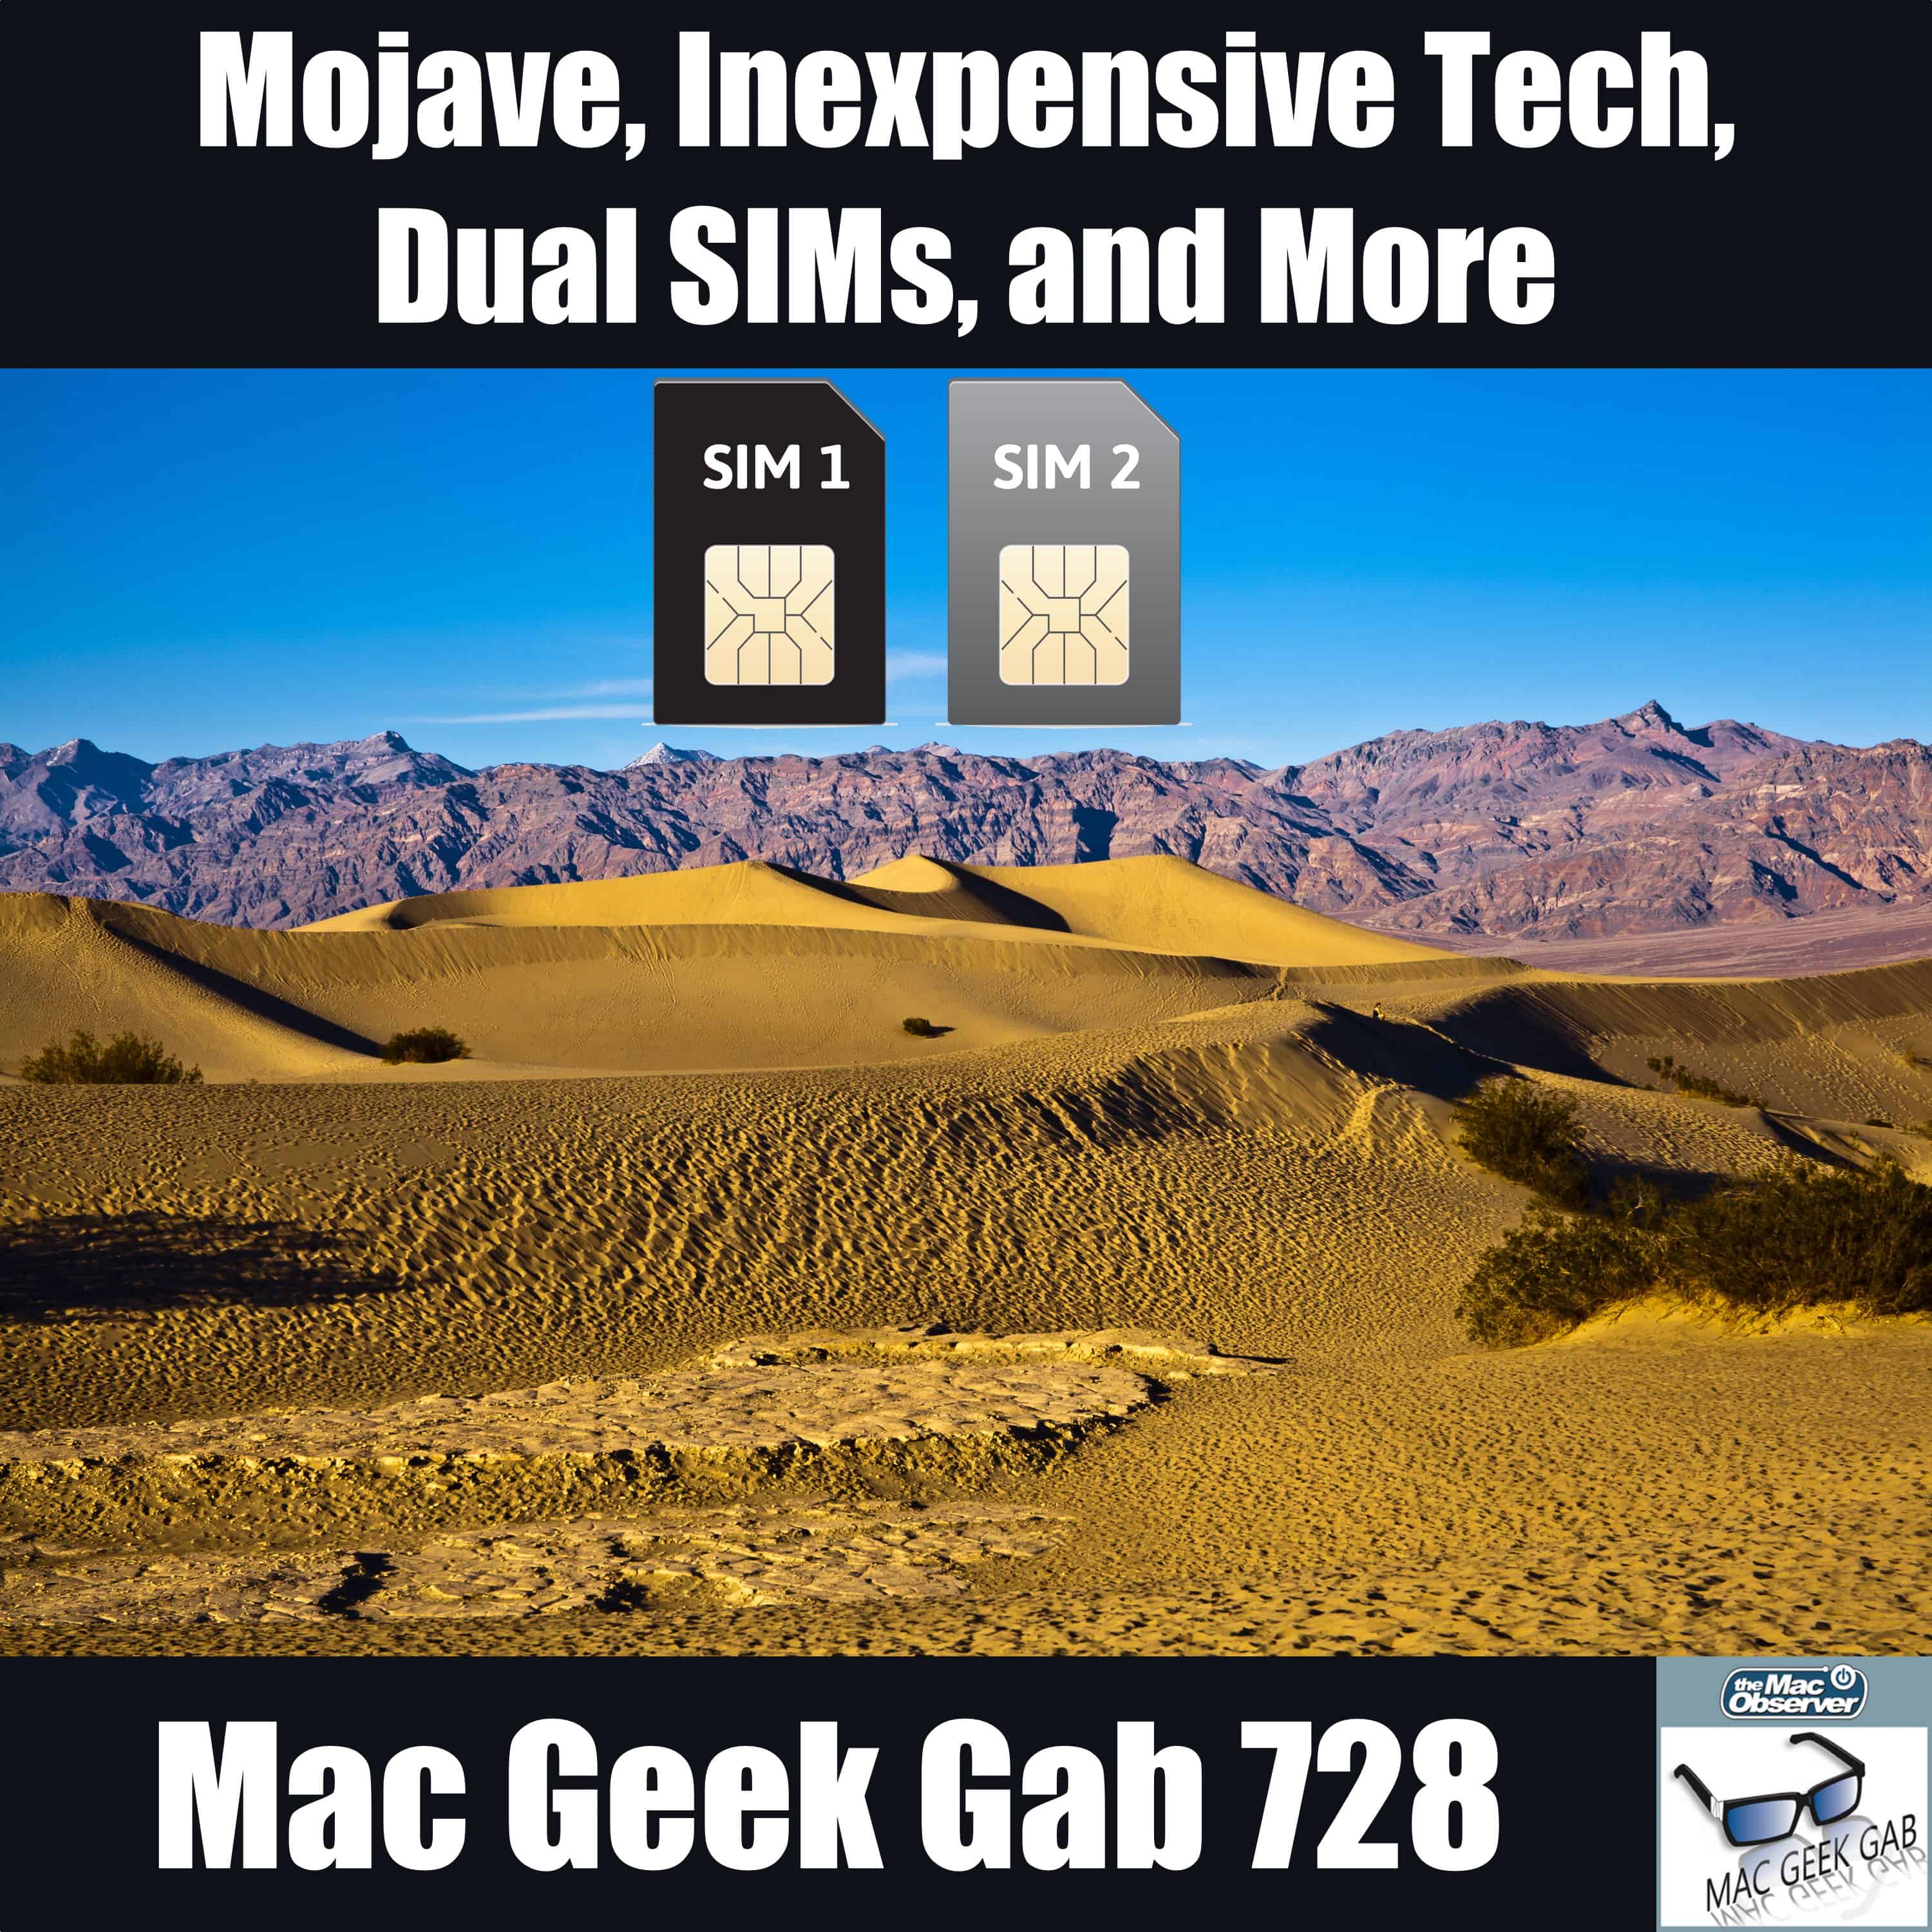 Mojave, Inexpensive Tech, Dual SIMs, and More – Mac Geek Gab 728